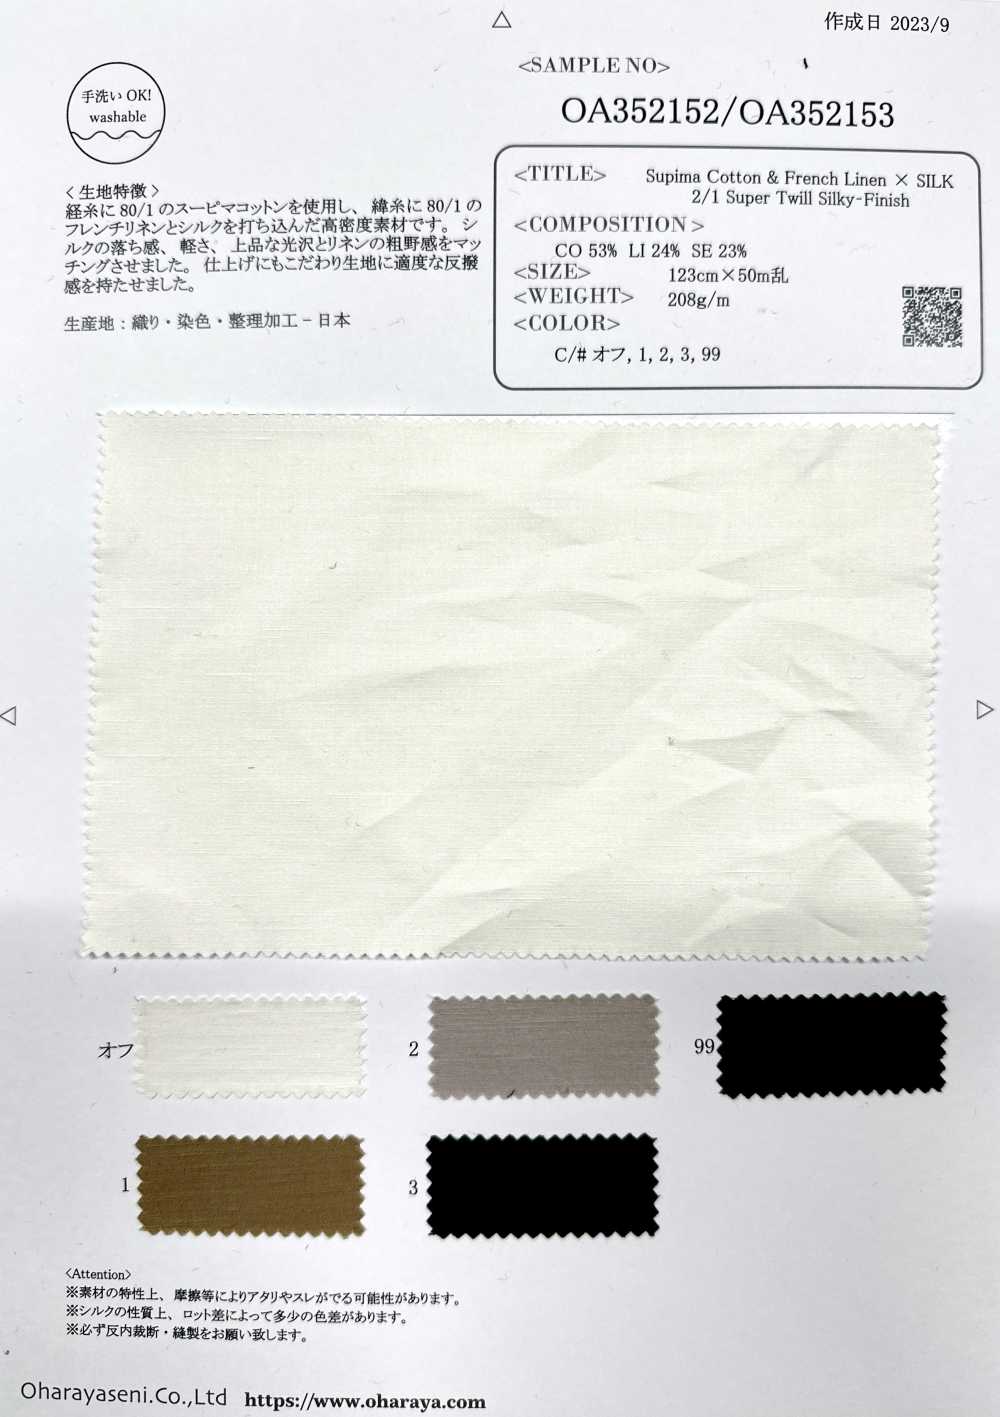 OA352152 Supima Cotton & French Linen × SILK 2/1 Super Twill Silky-Finish[生地] 小原屋繊維